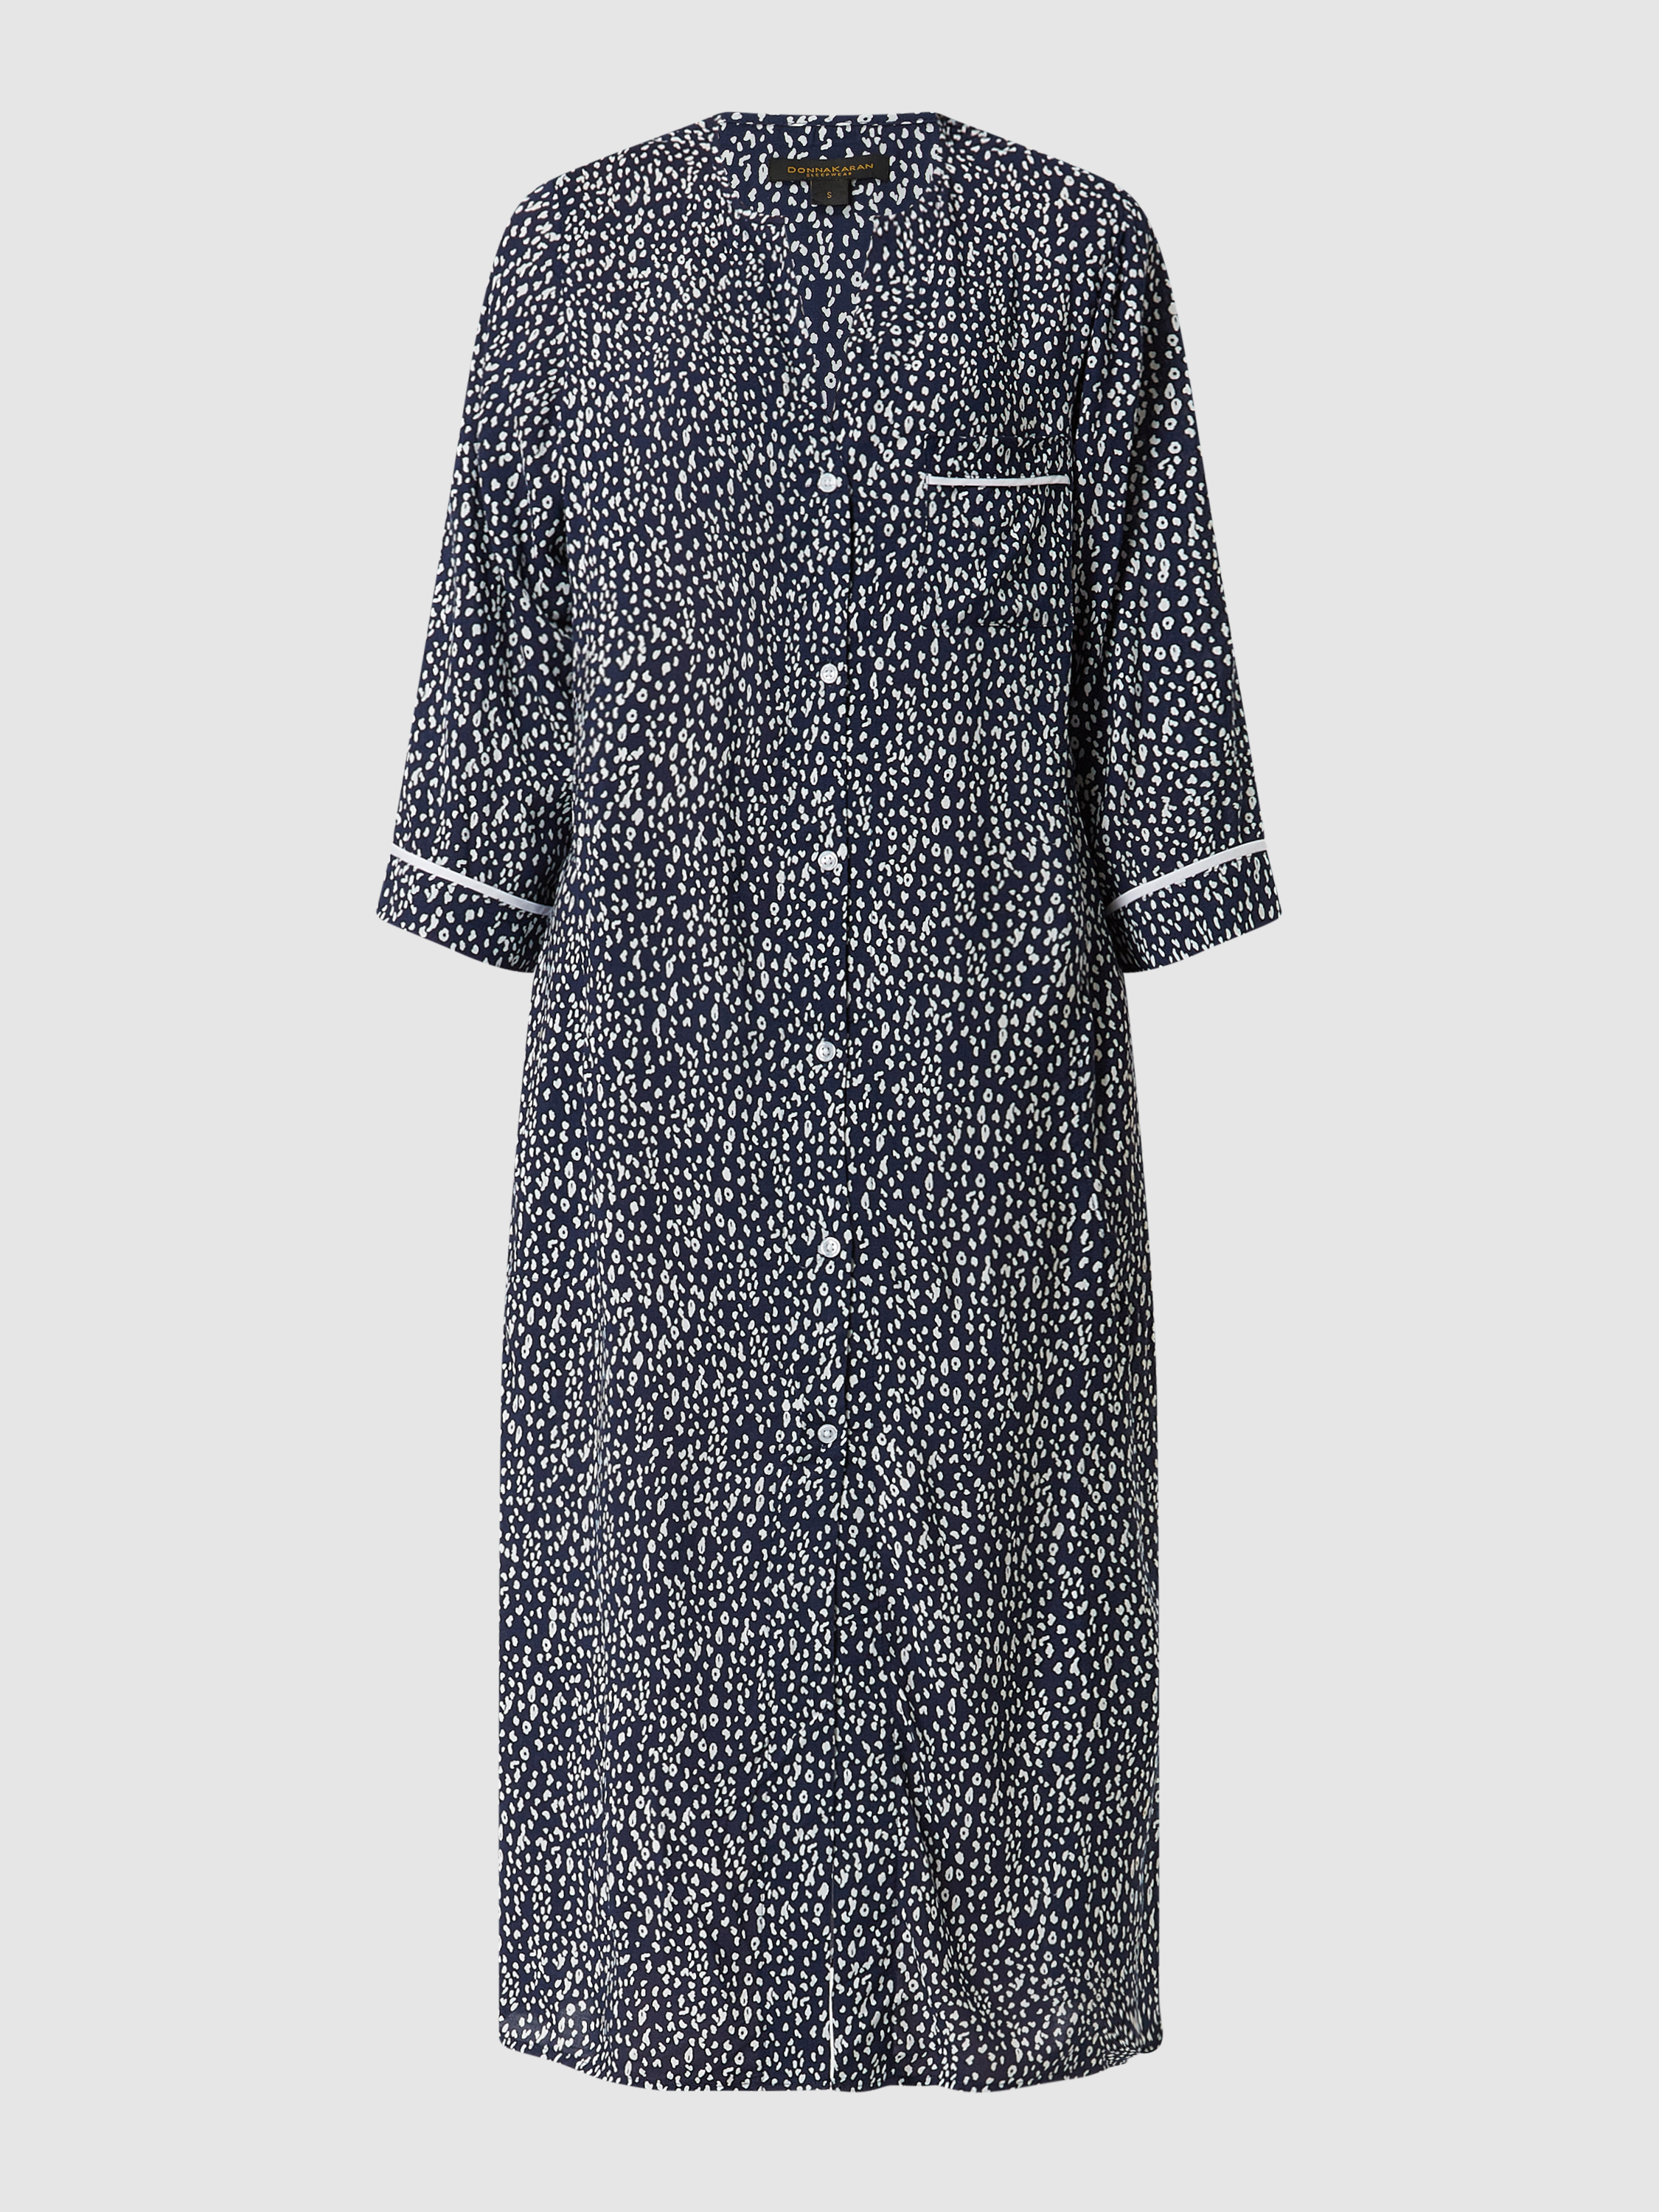 Платье домашнее женское DKNY 1529249 синее S (доставка из-за рубежа)